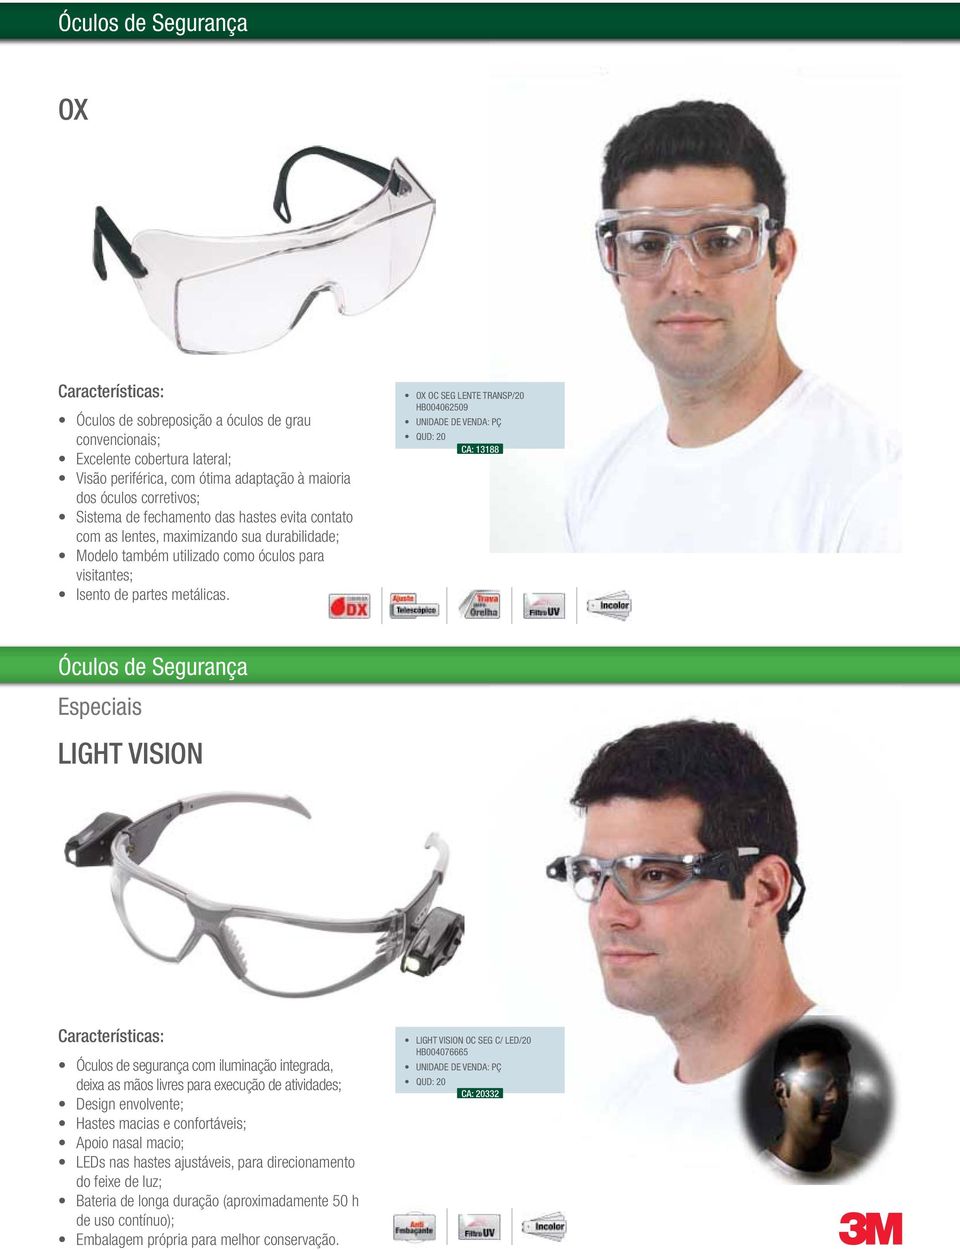 OX OC SEG LENTE TRANSP/20 HB004062509 CA: 13188 Óculos de Segurança Especiais LIGHT VISION Óculos de segurança com iluminação integrada, deixa as mãos livres para execução de atividades; Design